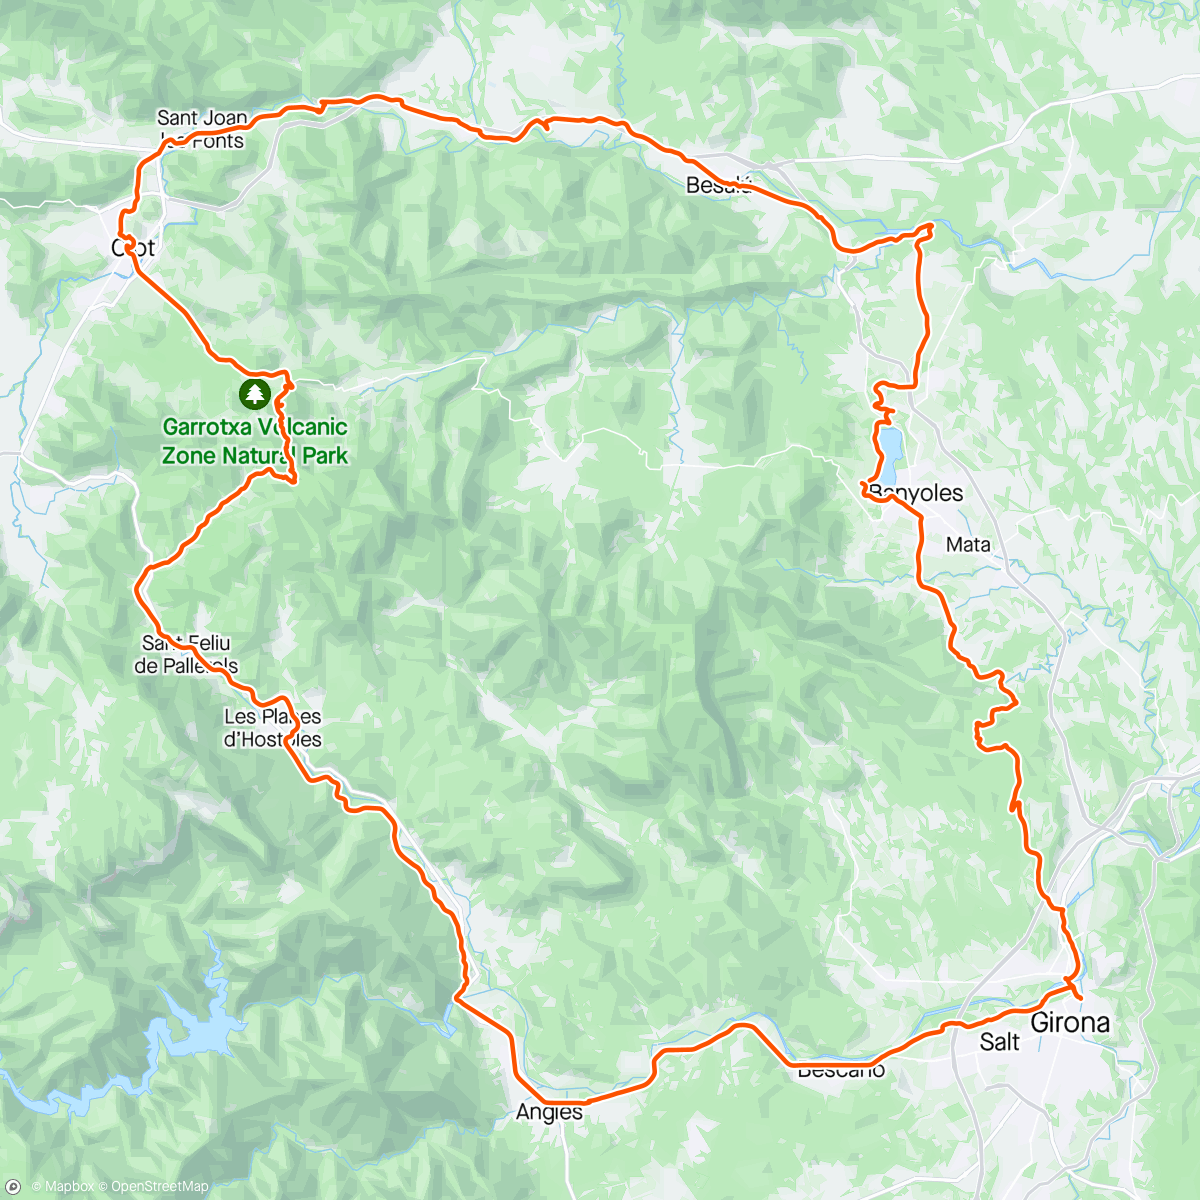 Mapa da atividade, Intorno a Girona